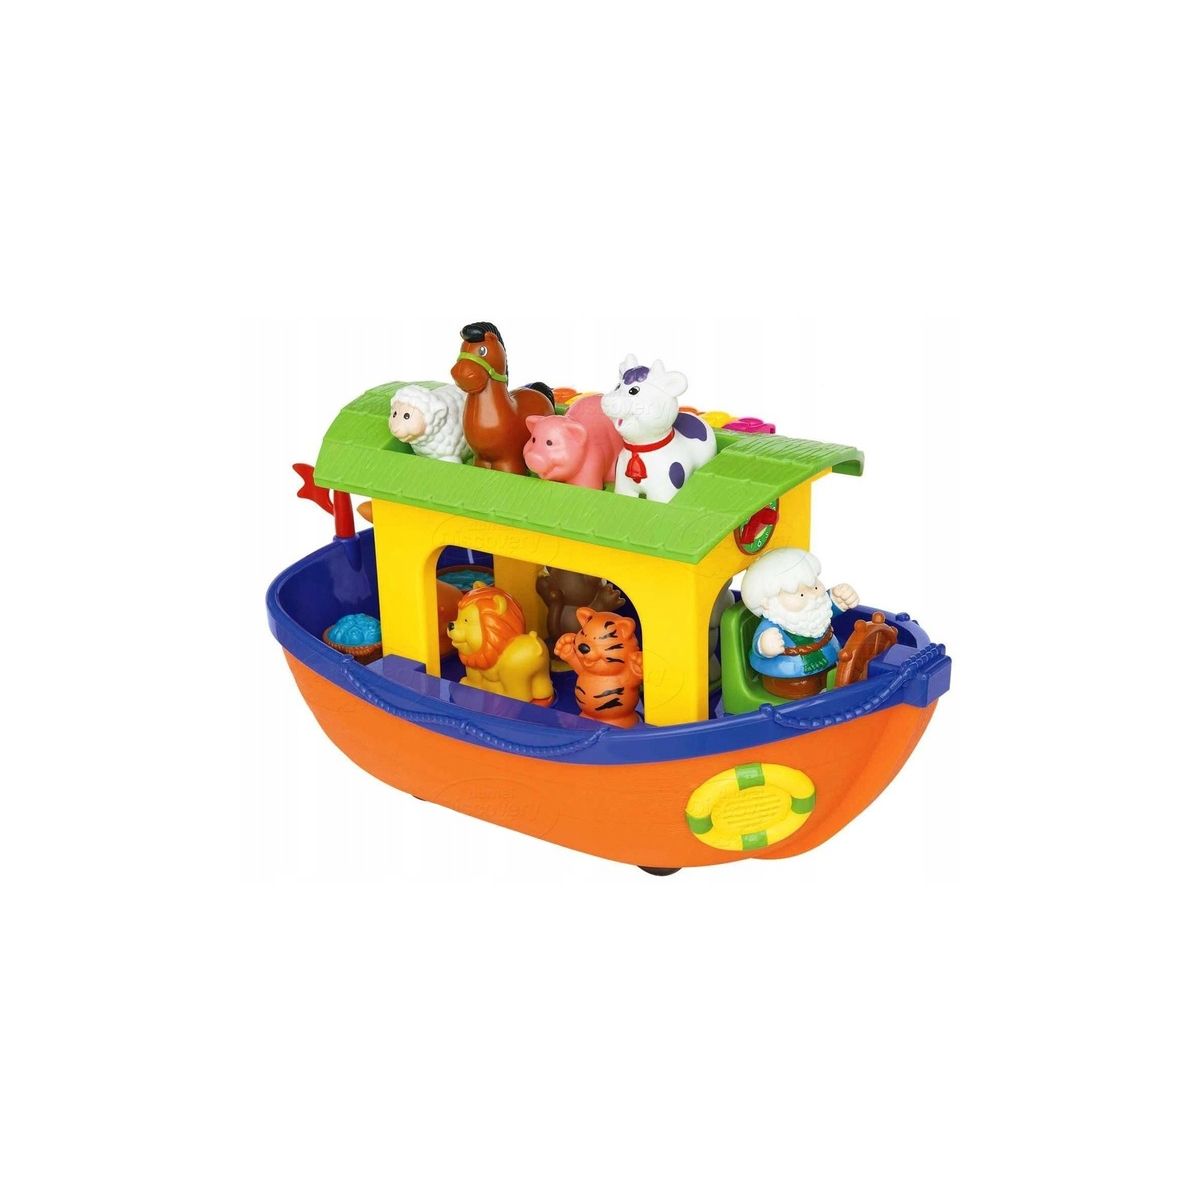 Zabawka edukacyjna Arka Noego Discovery (DD31880)